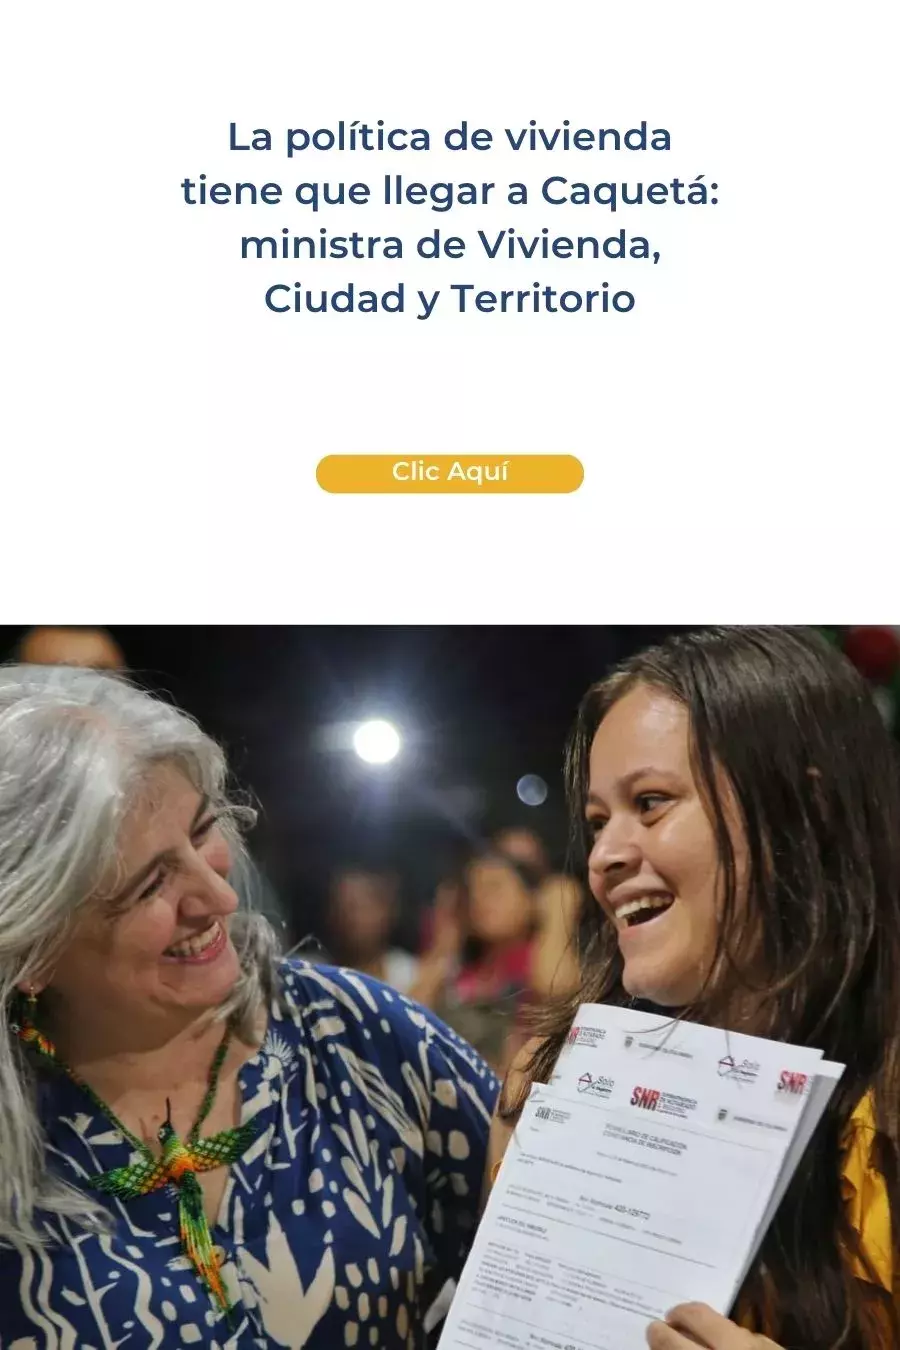 La política de vivienda tiene que llegar a Caquetá: ministra de Vivienda, Ciudad y Territorio